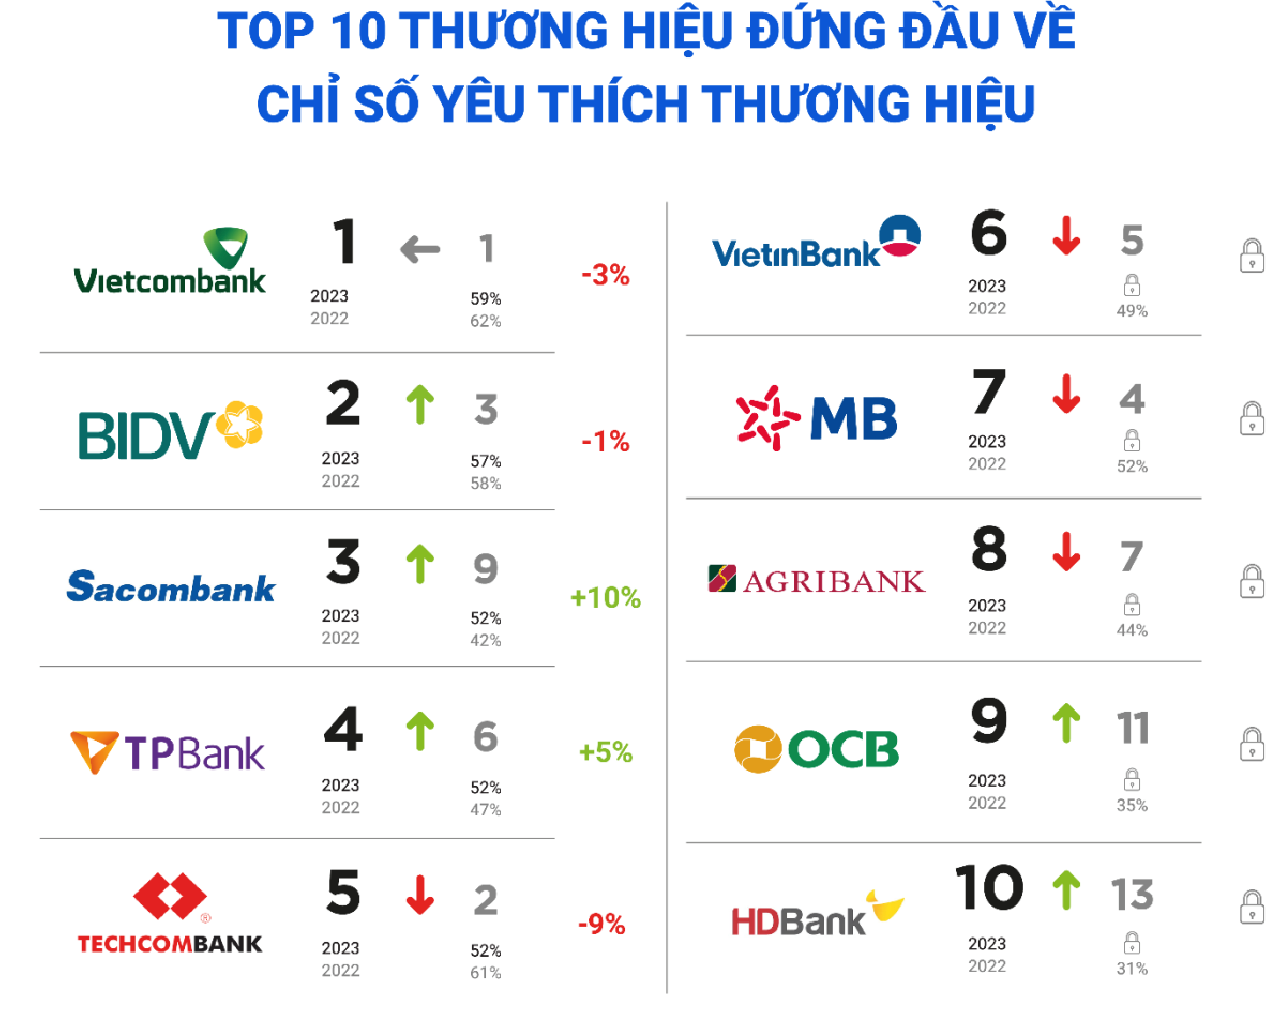 Top 10 thương hiệu ngân hàng đứng đầu về chỉ số yêu thích thương hiệu